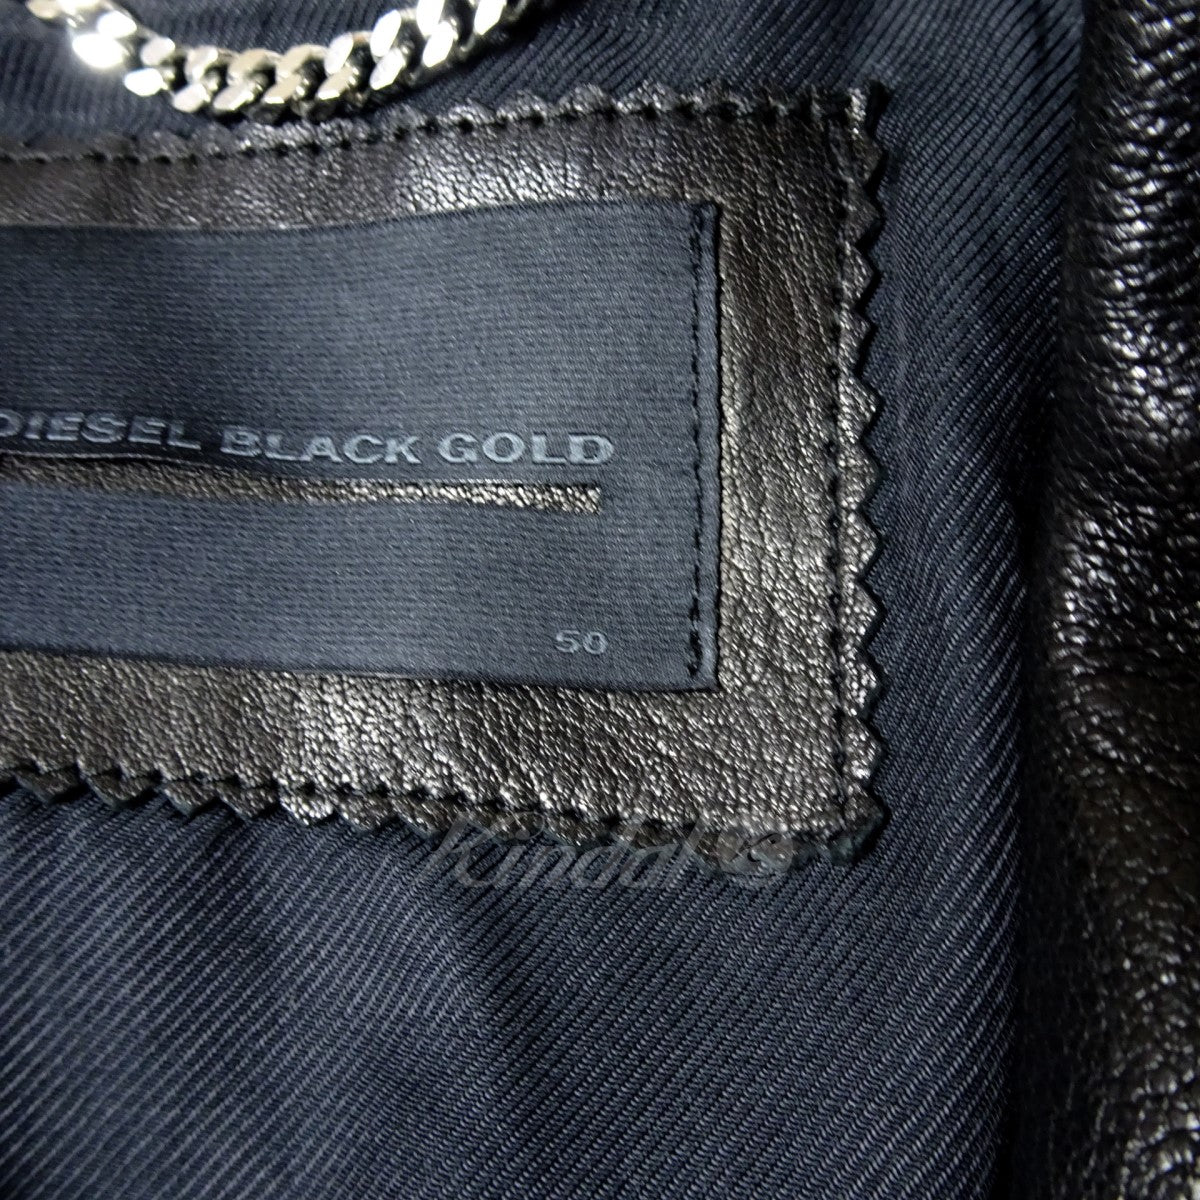 DIESEL BLACK GOLD(ディーゼル ブラック ゴールド) ダブルライダース ...